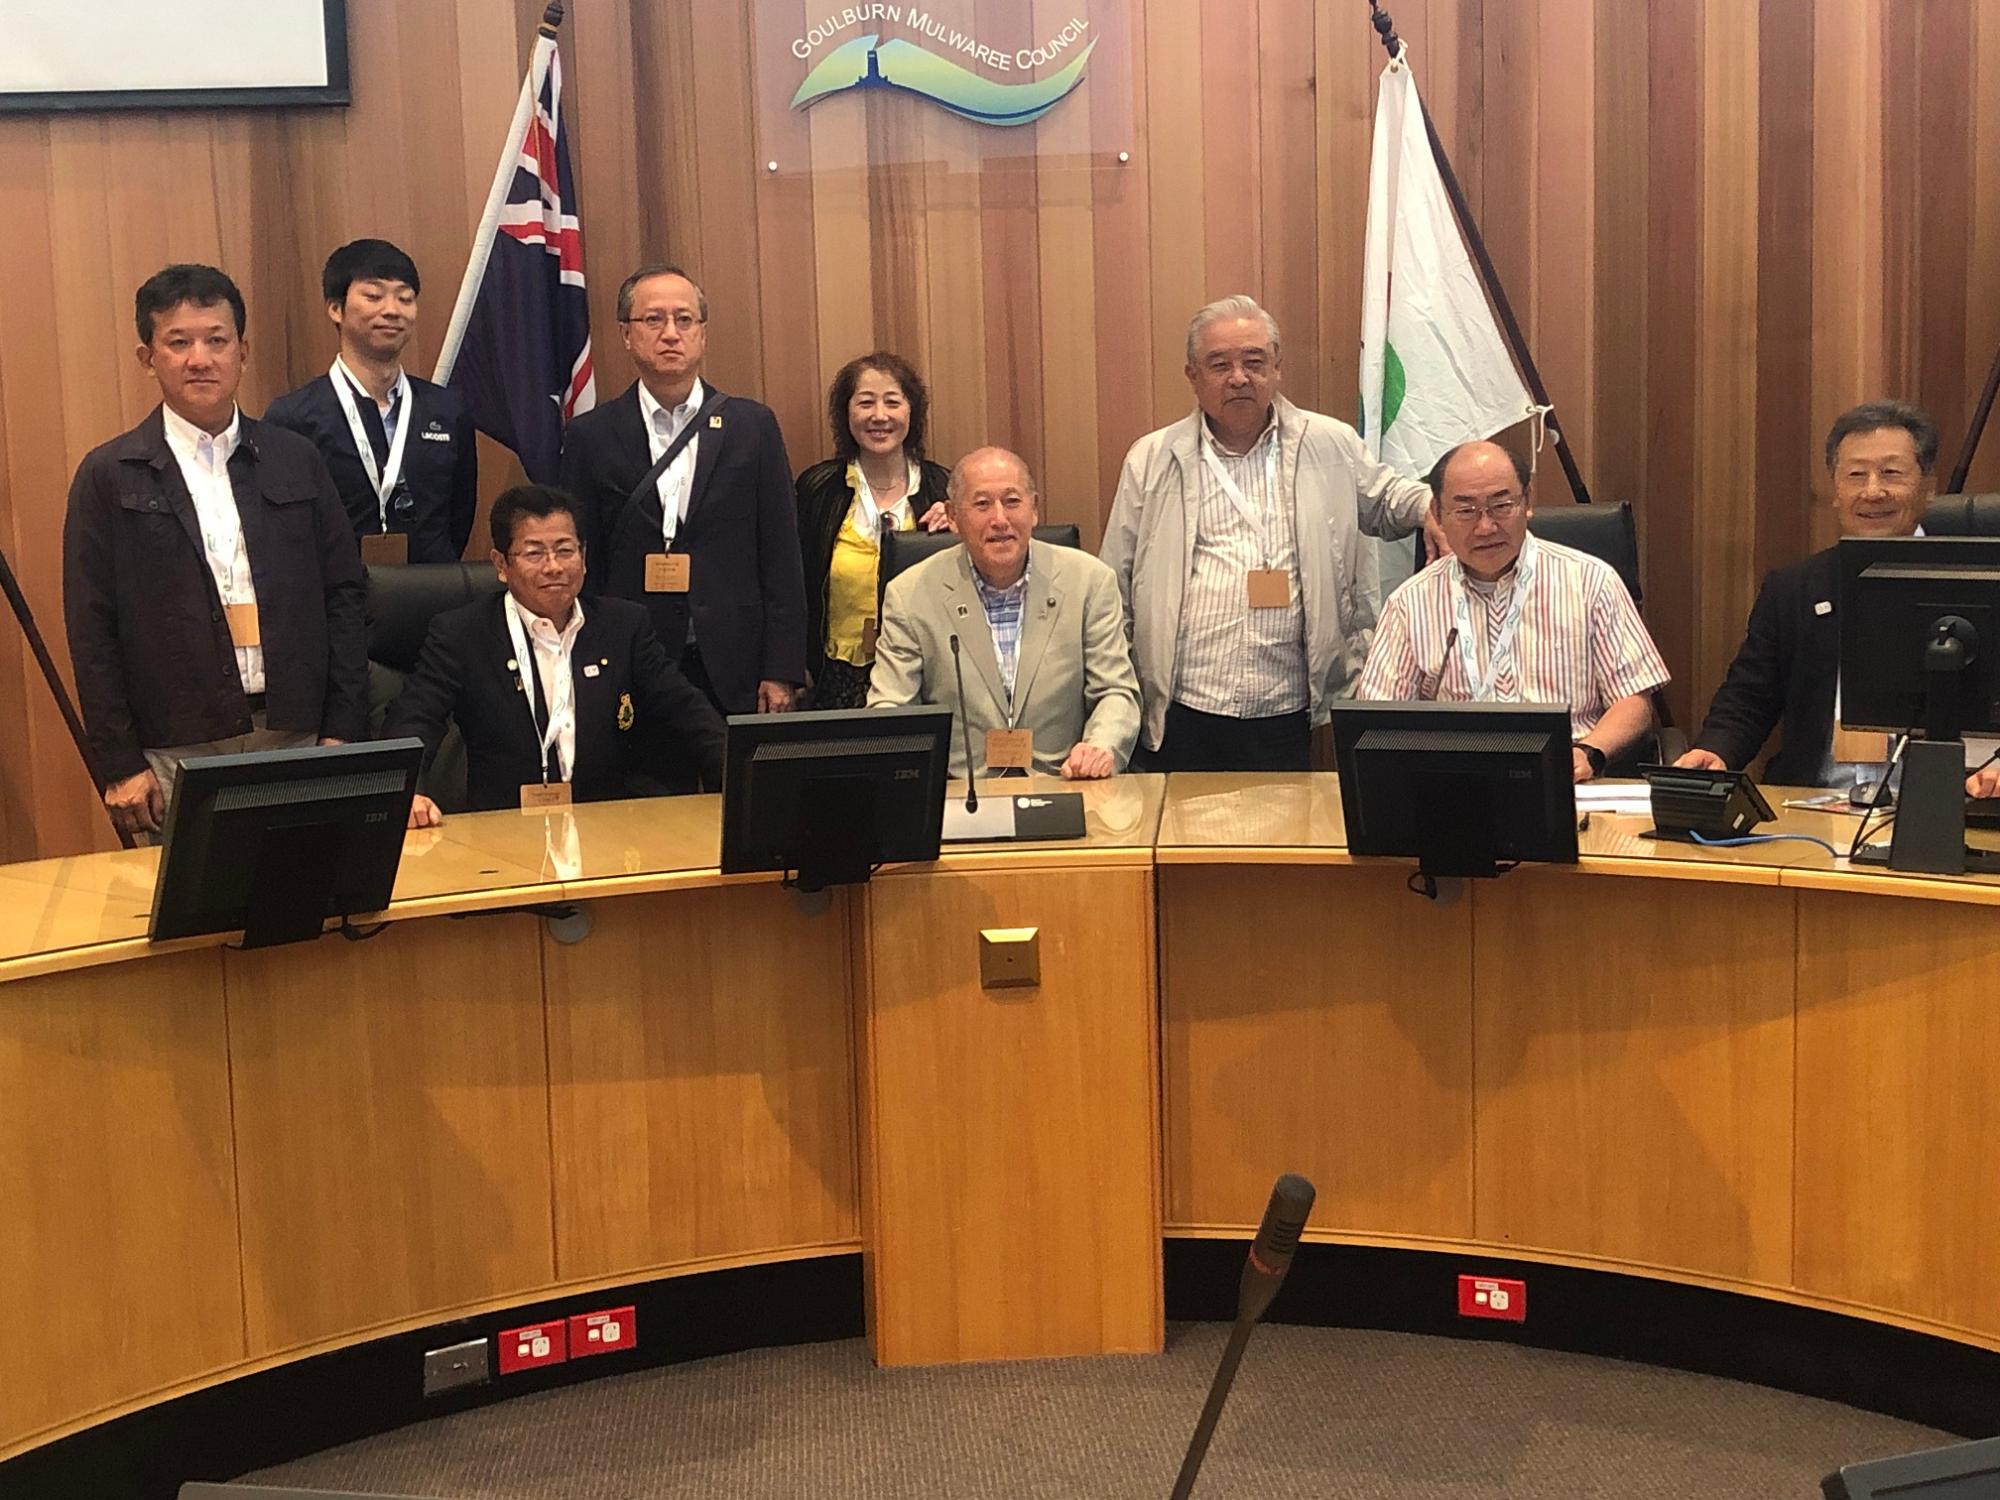 オーストラリアと士別市の旗の前の机で9名の参加者の人達が記念撮影をしている写真